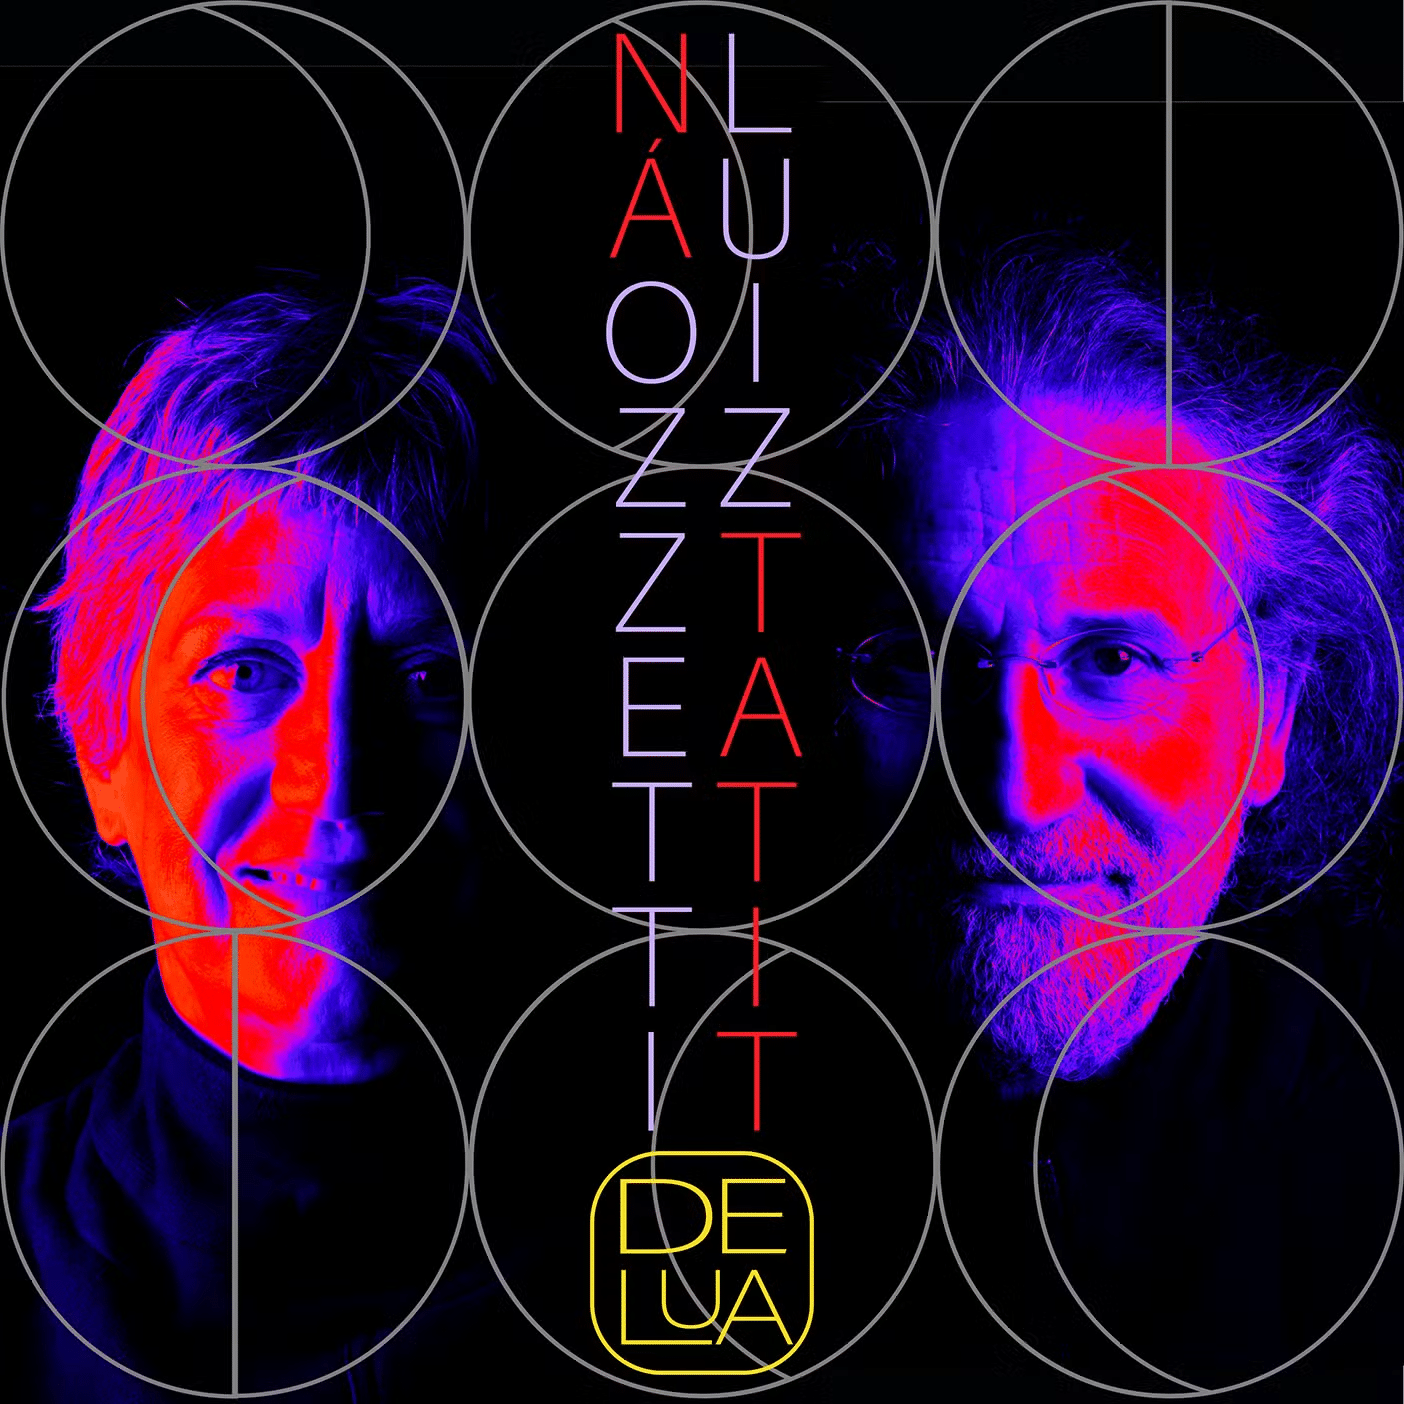 revistaprosaversoearte.com - 'De Lua', primeiro álbum autoral da dupla Ná Ozetti e Luiz Tatit